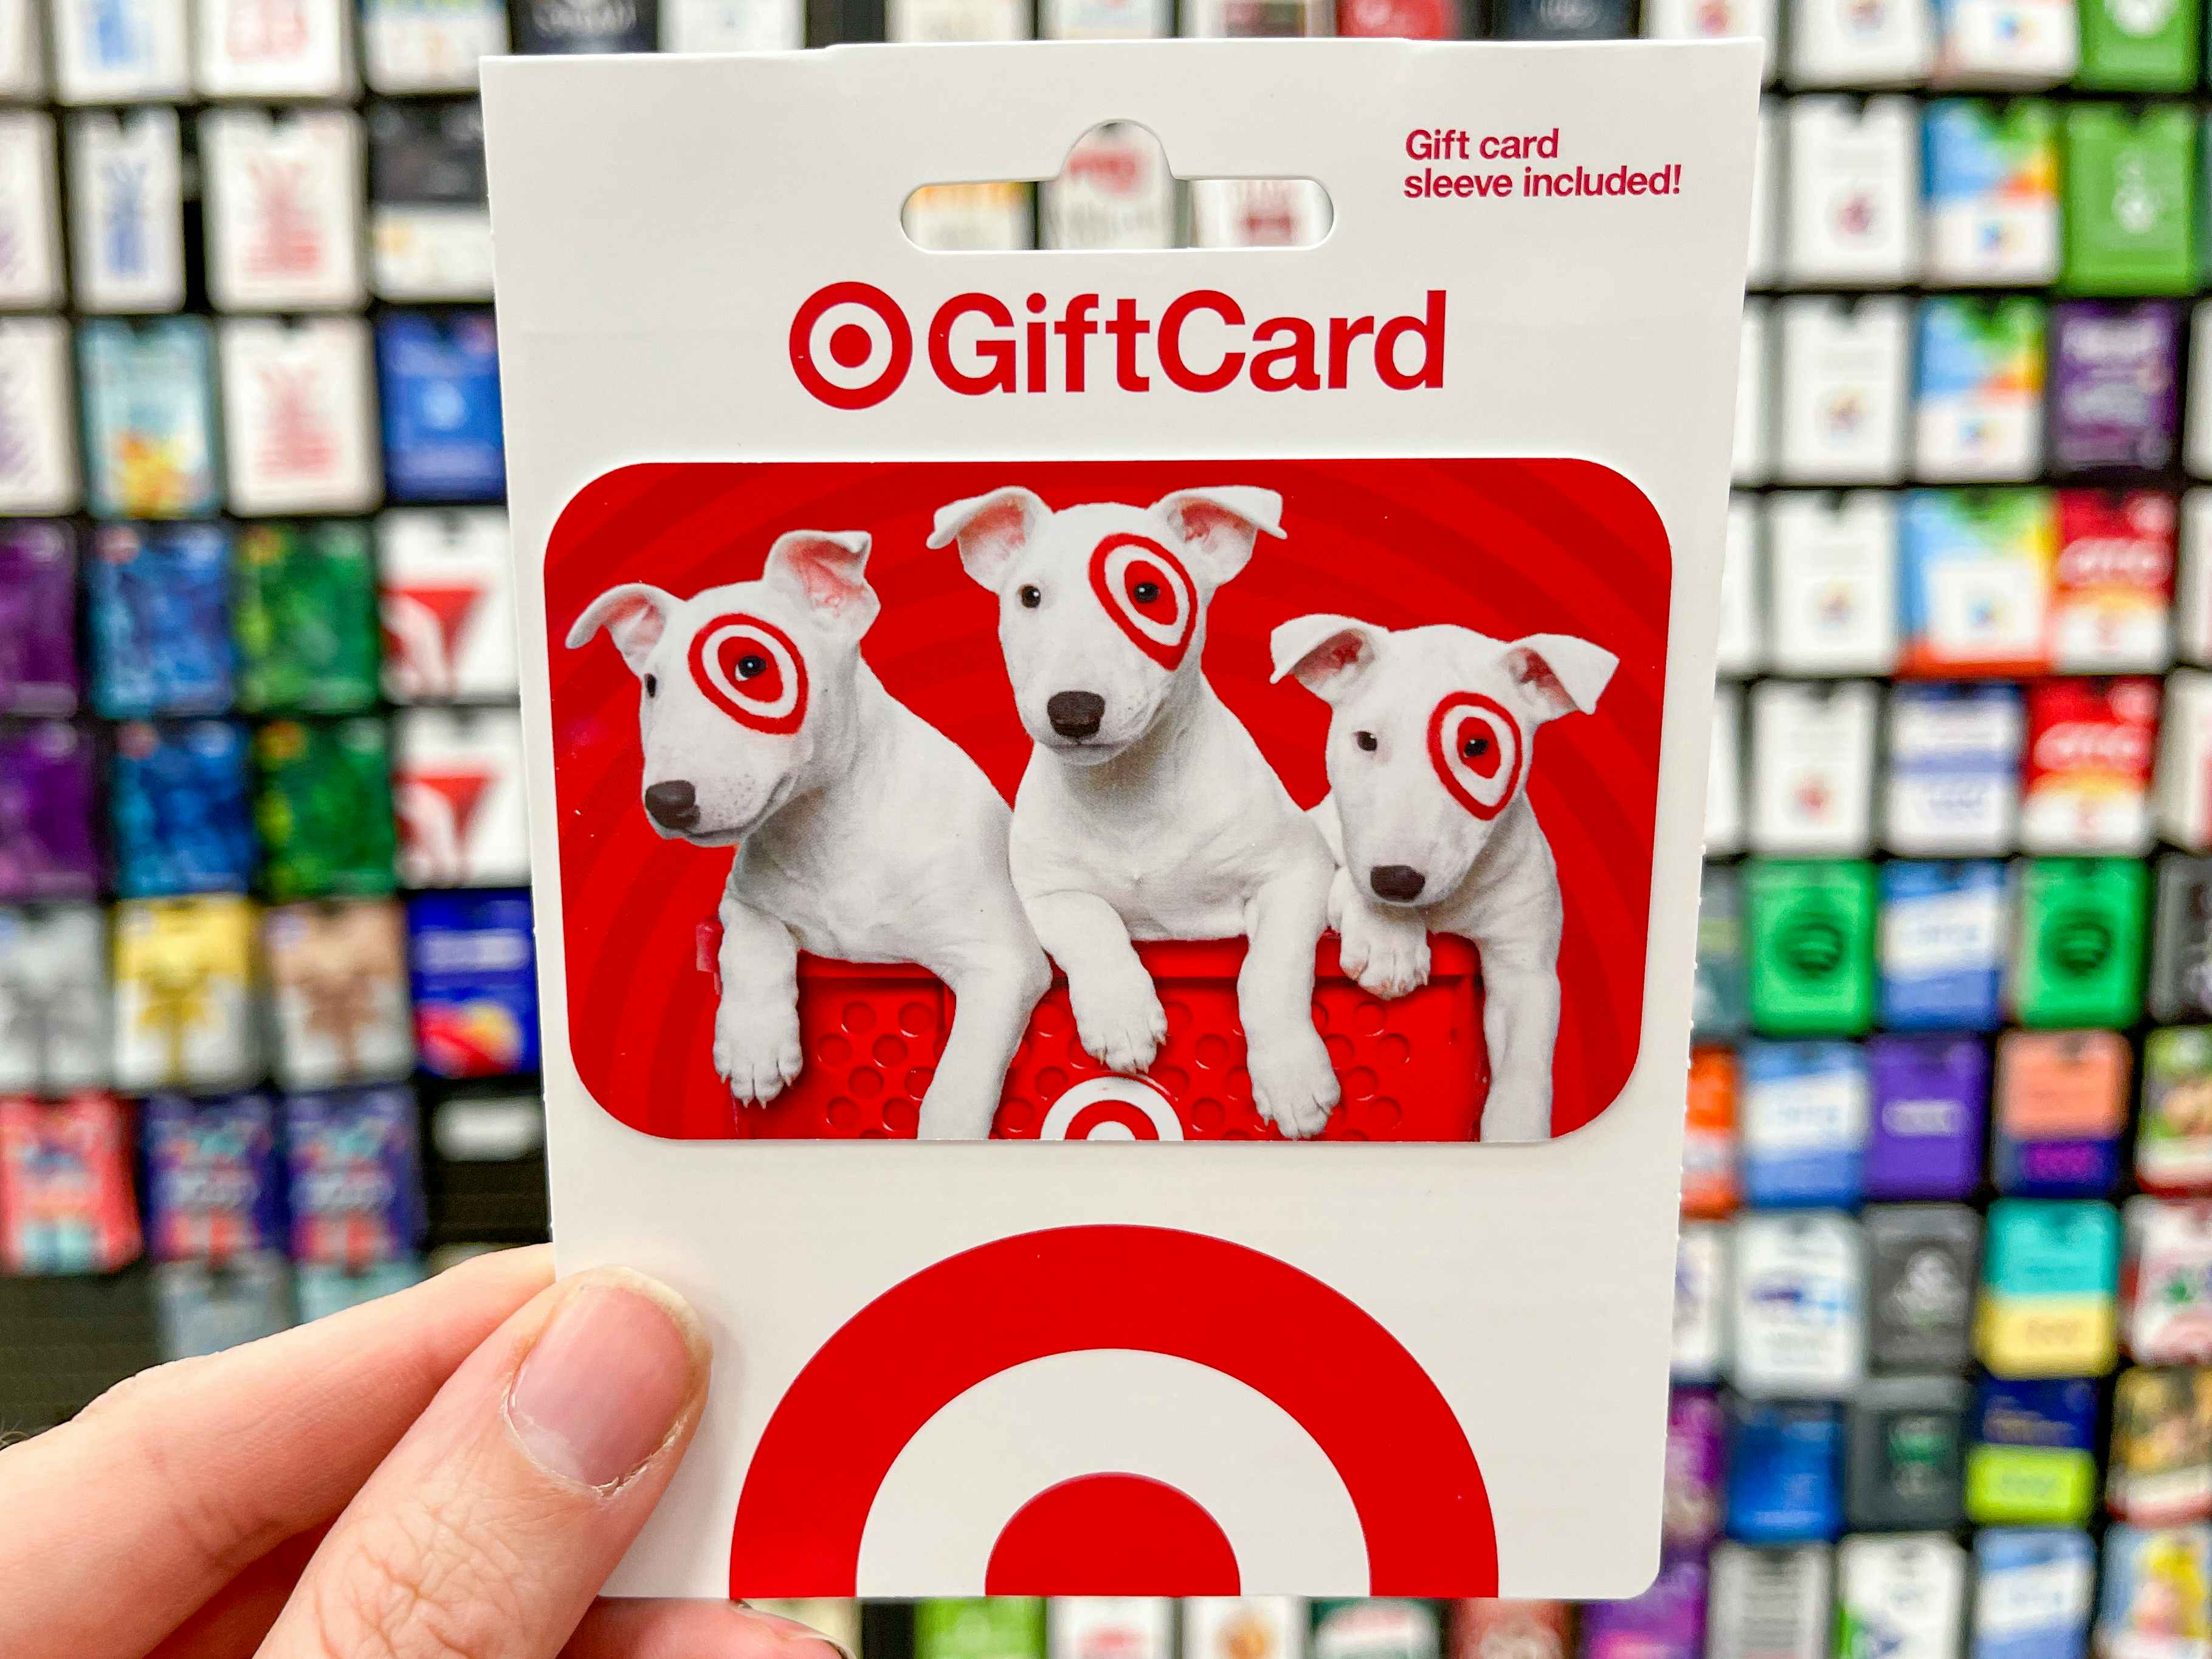 Buy $100 Apple eGift Card, Get Free $15 Target Gift Card!